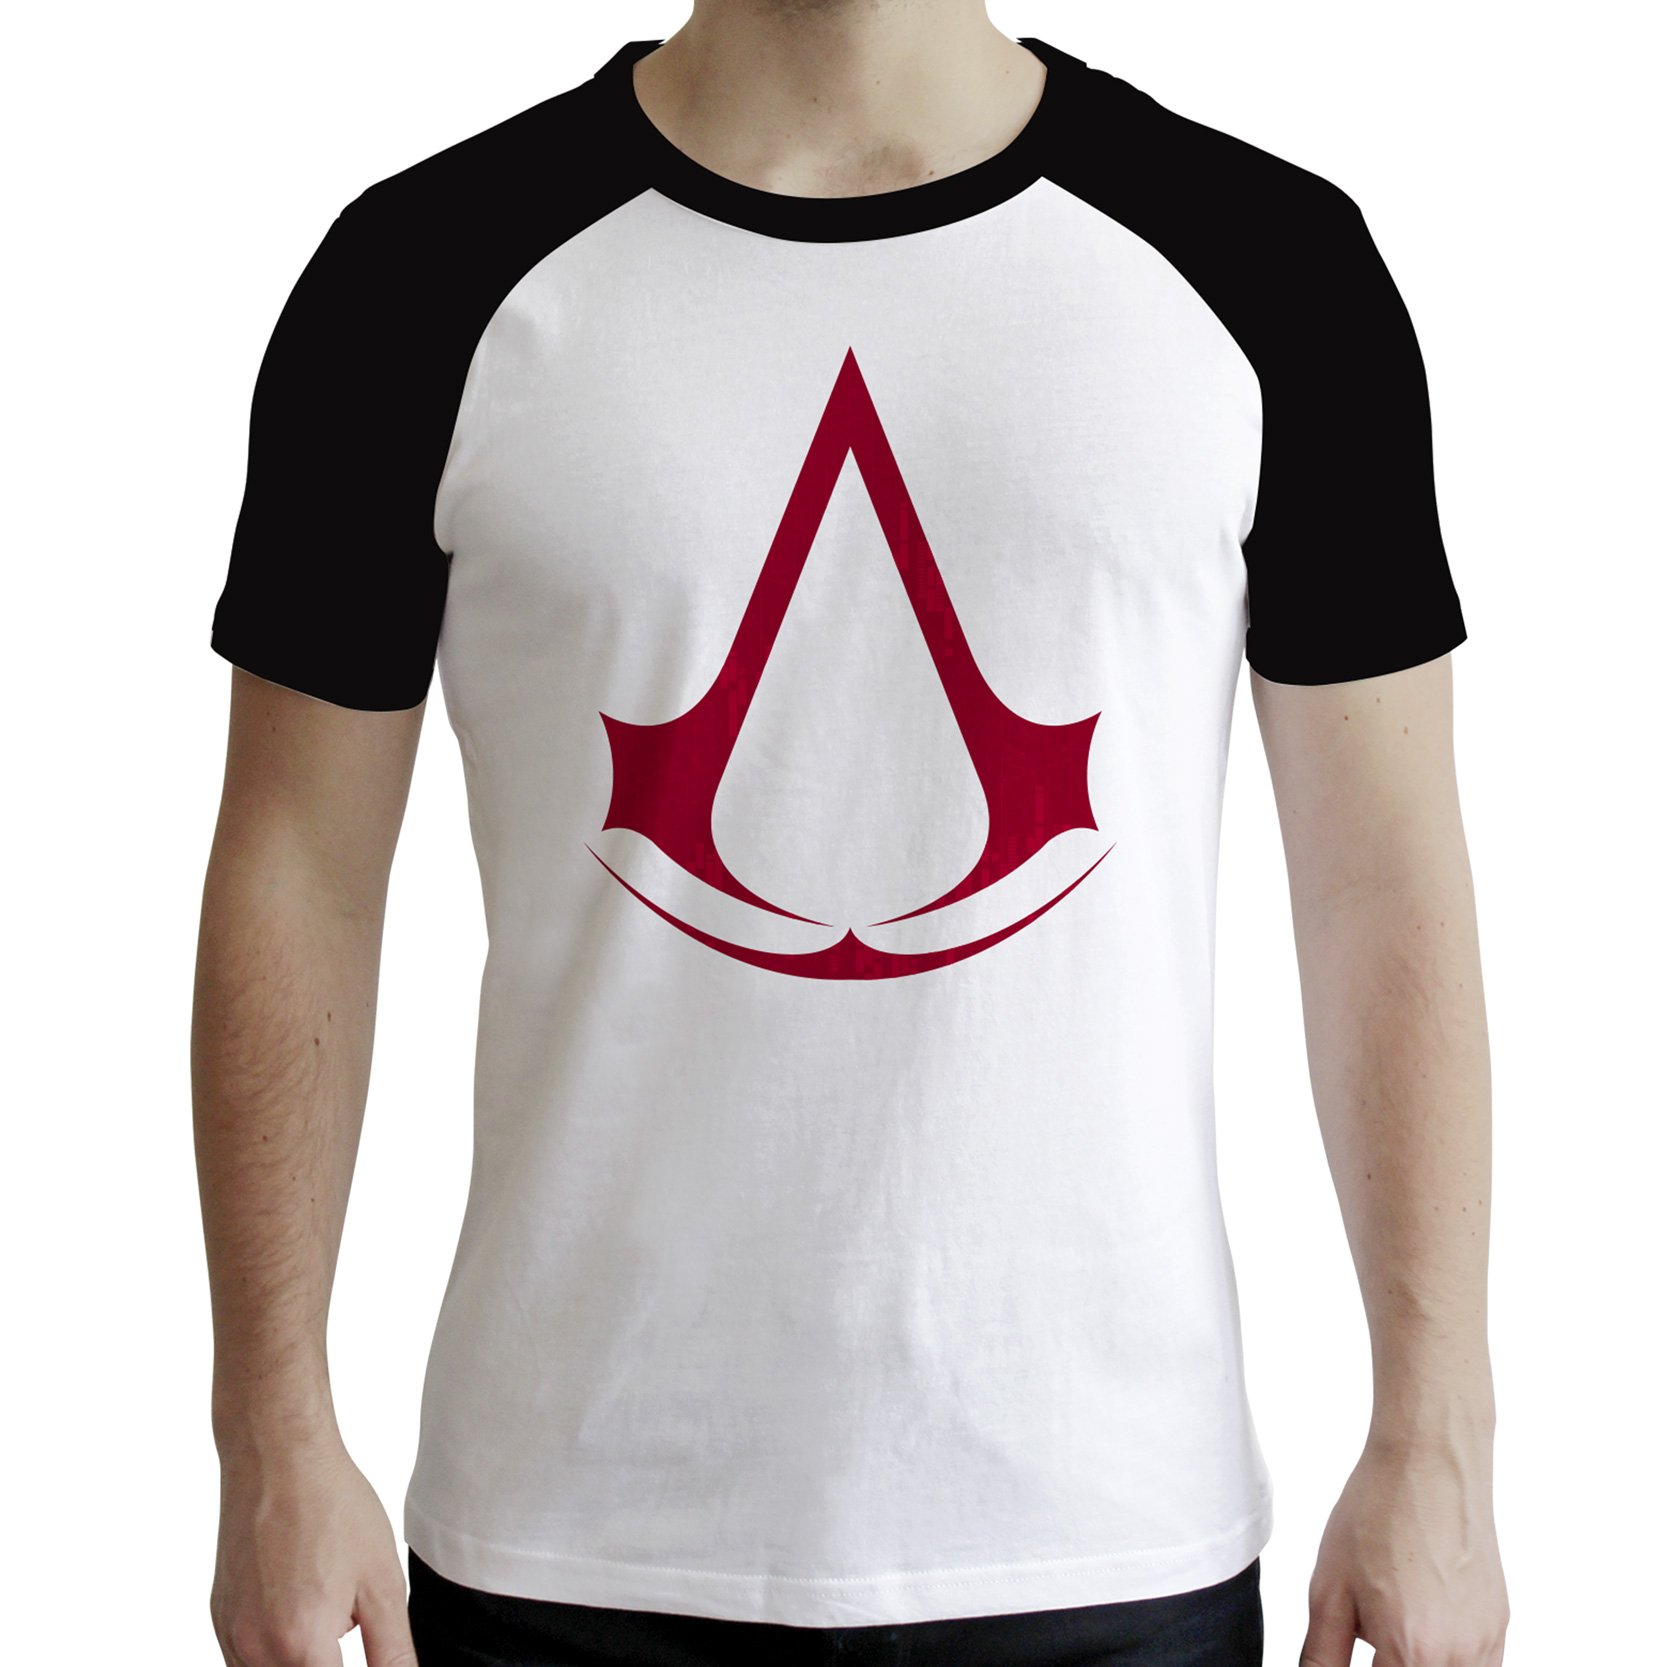 ABYstyle - Assassin's Creed - T-Shirt - Crest - Herren - Weiß & Schwarz (S)